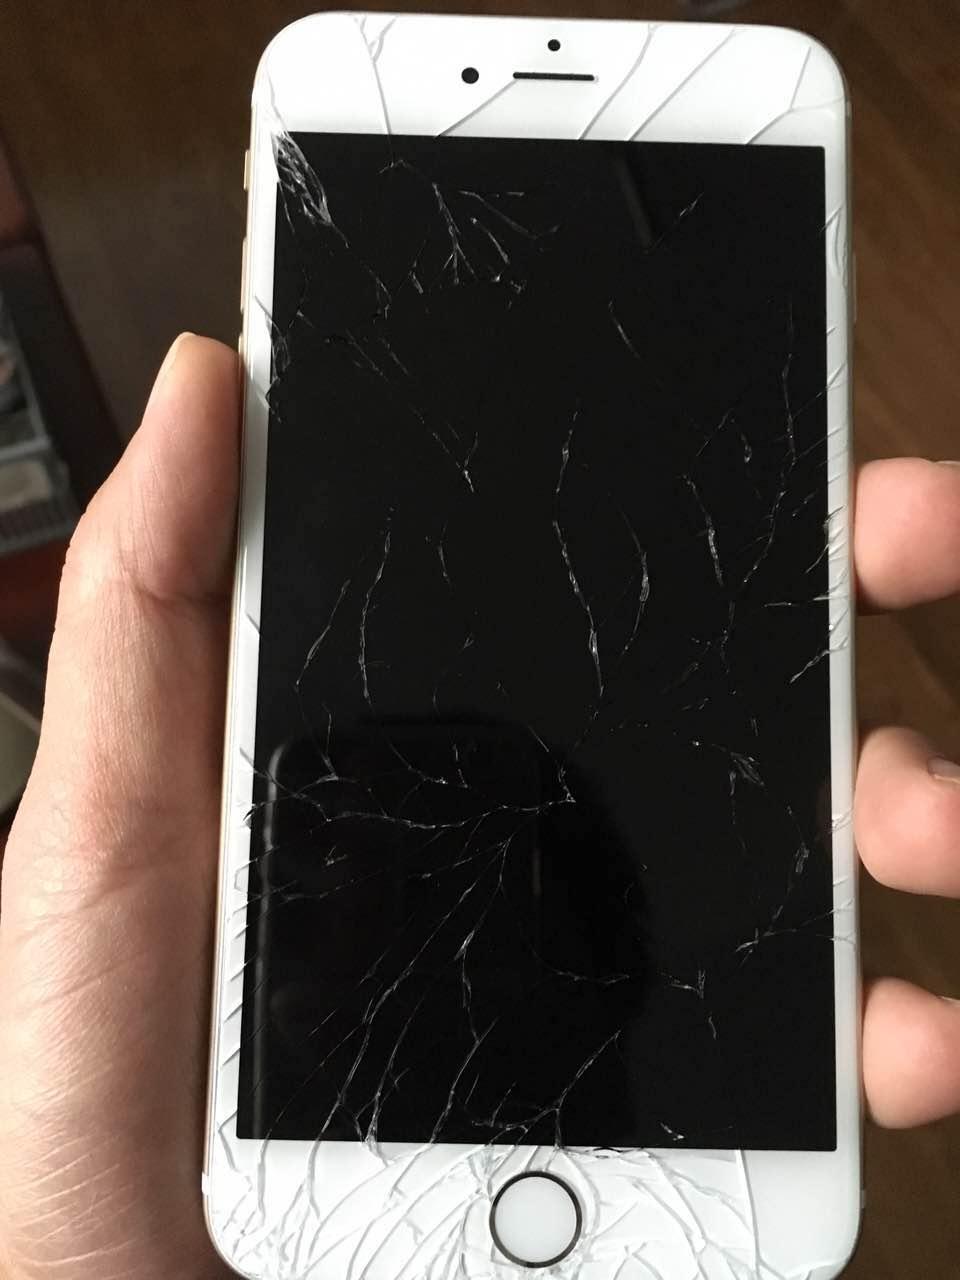 iphone6plus屏幕摔碎了怎么办